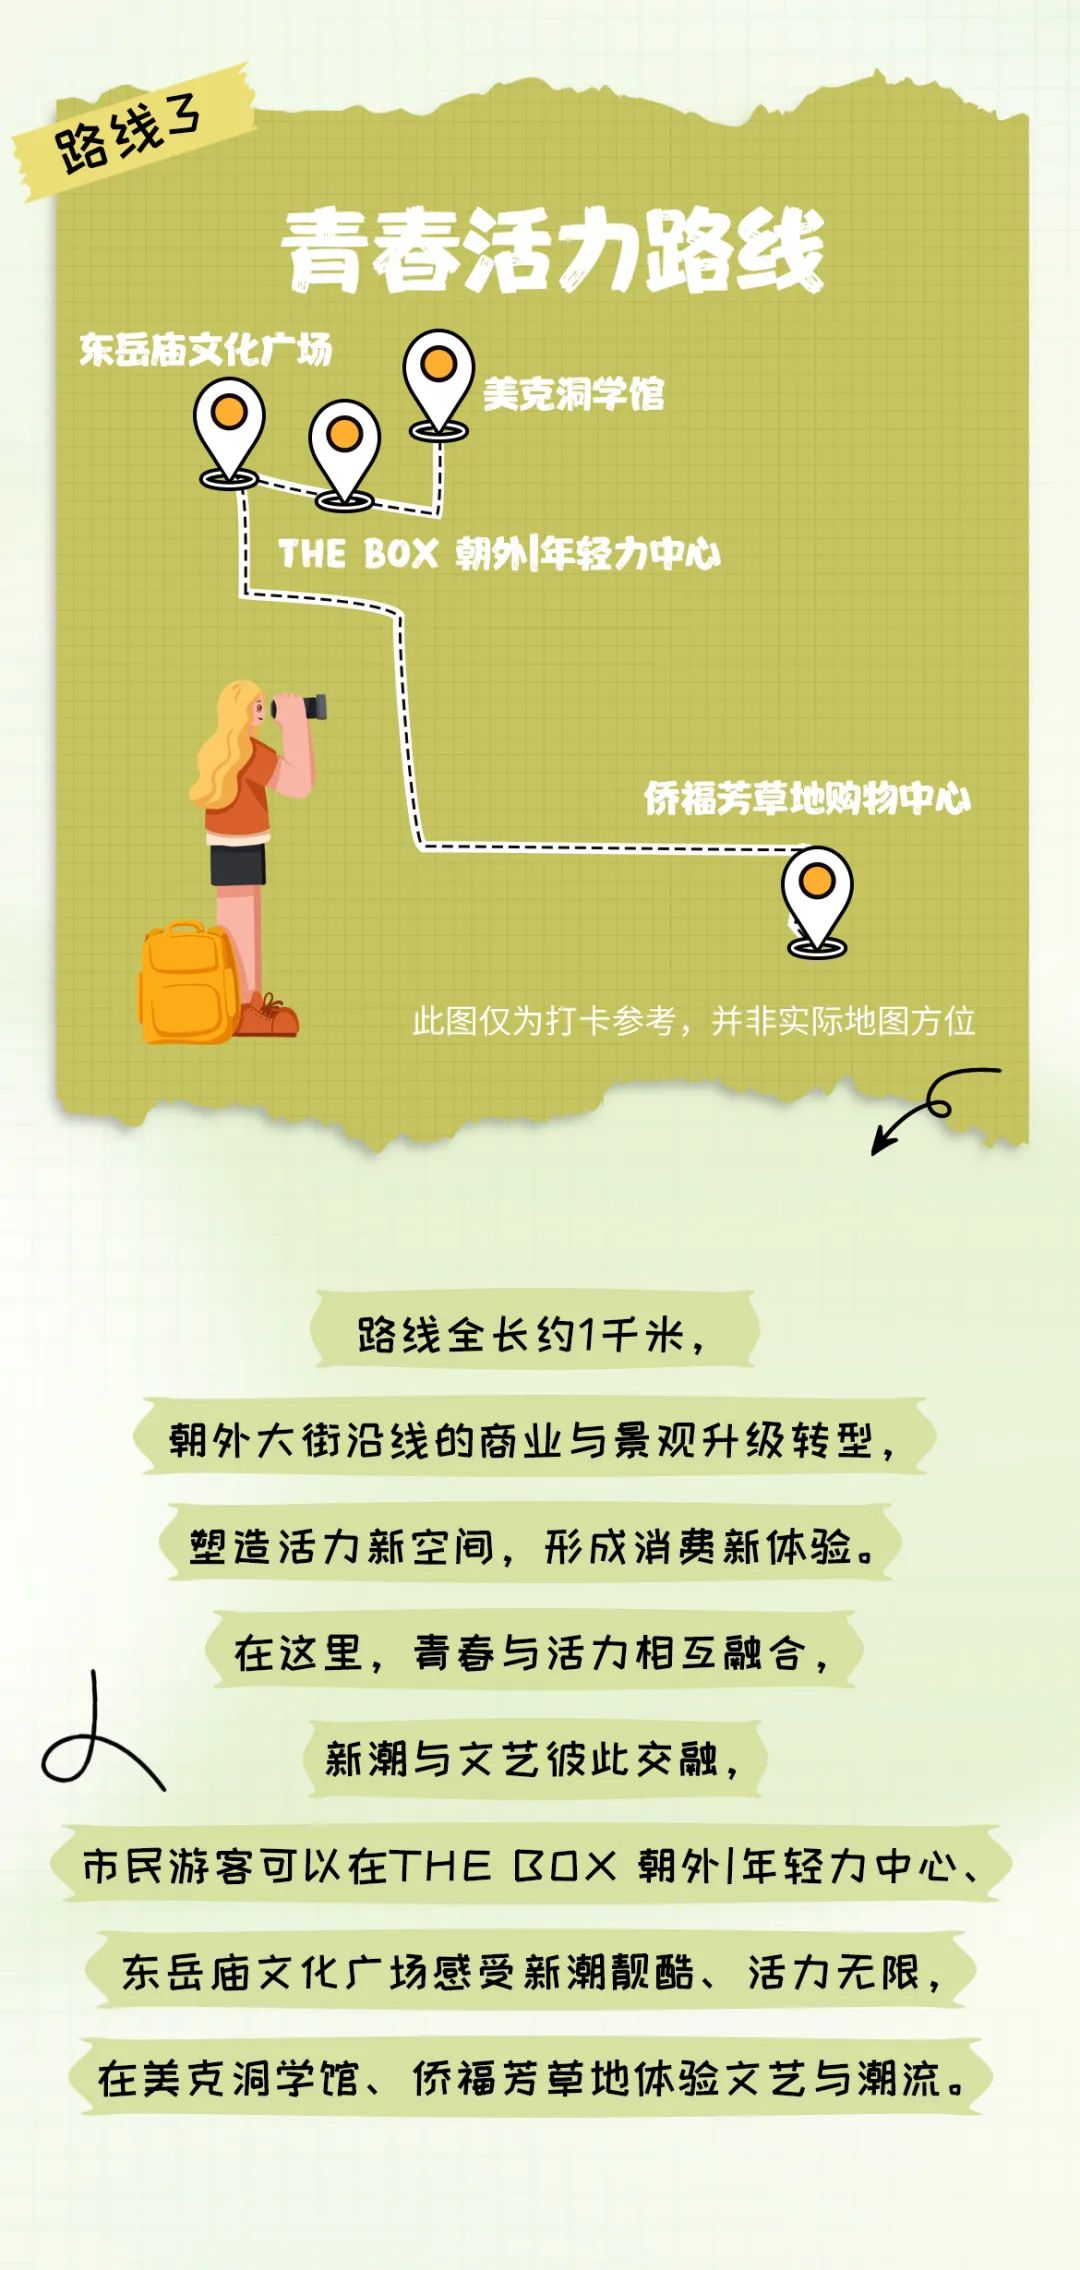 来源：北京规划自然资源微信公众号 部分图片来源：北京朝阳、中赫工体微信公众号